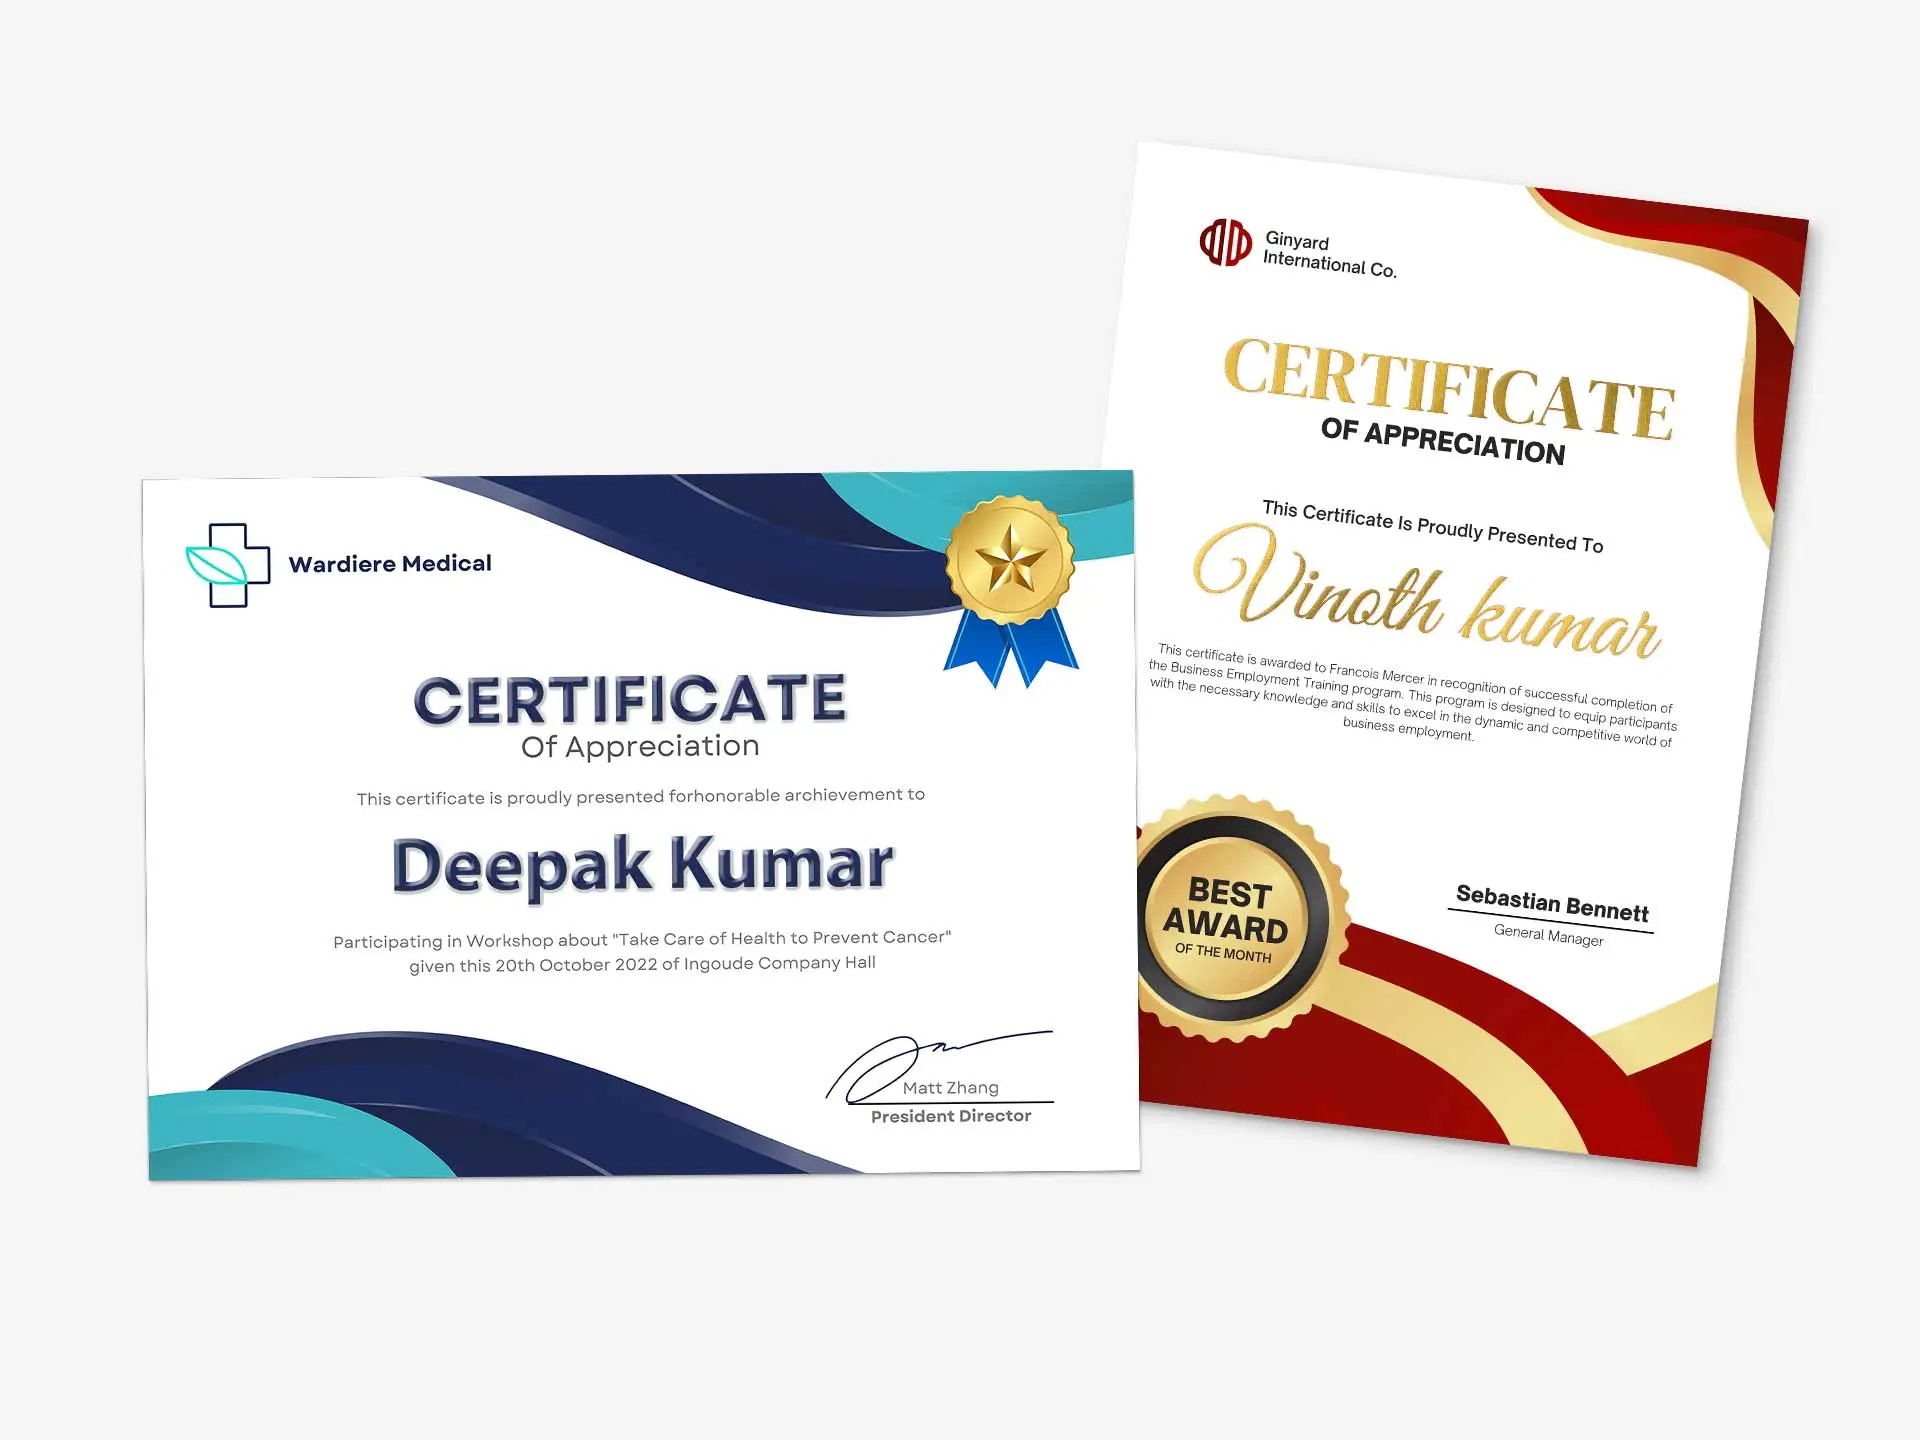 Premium Paper Certificates